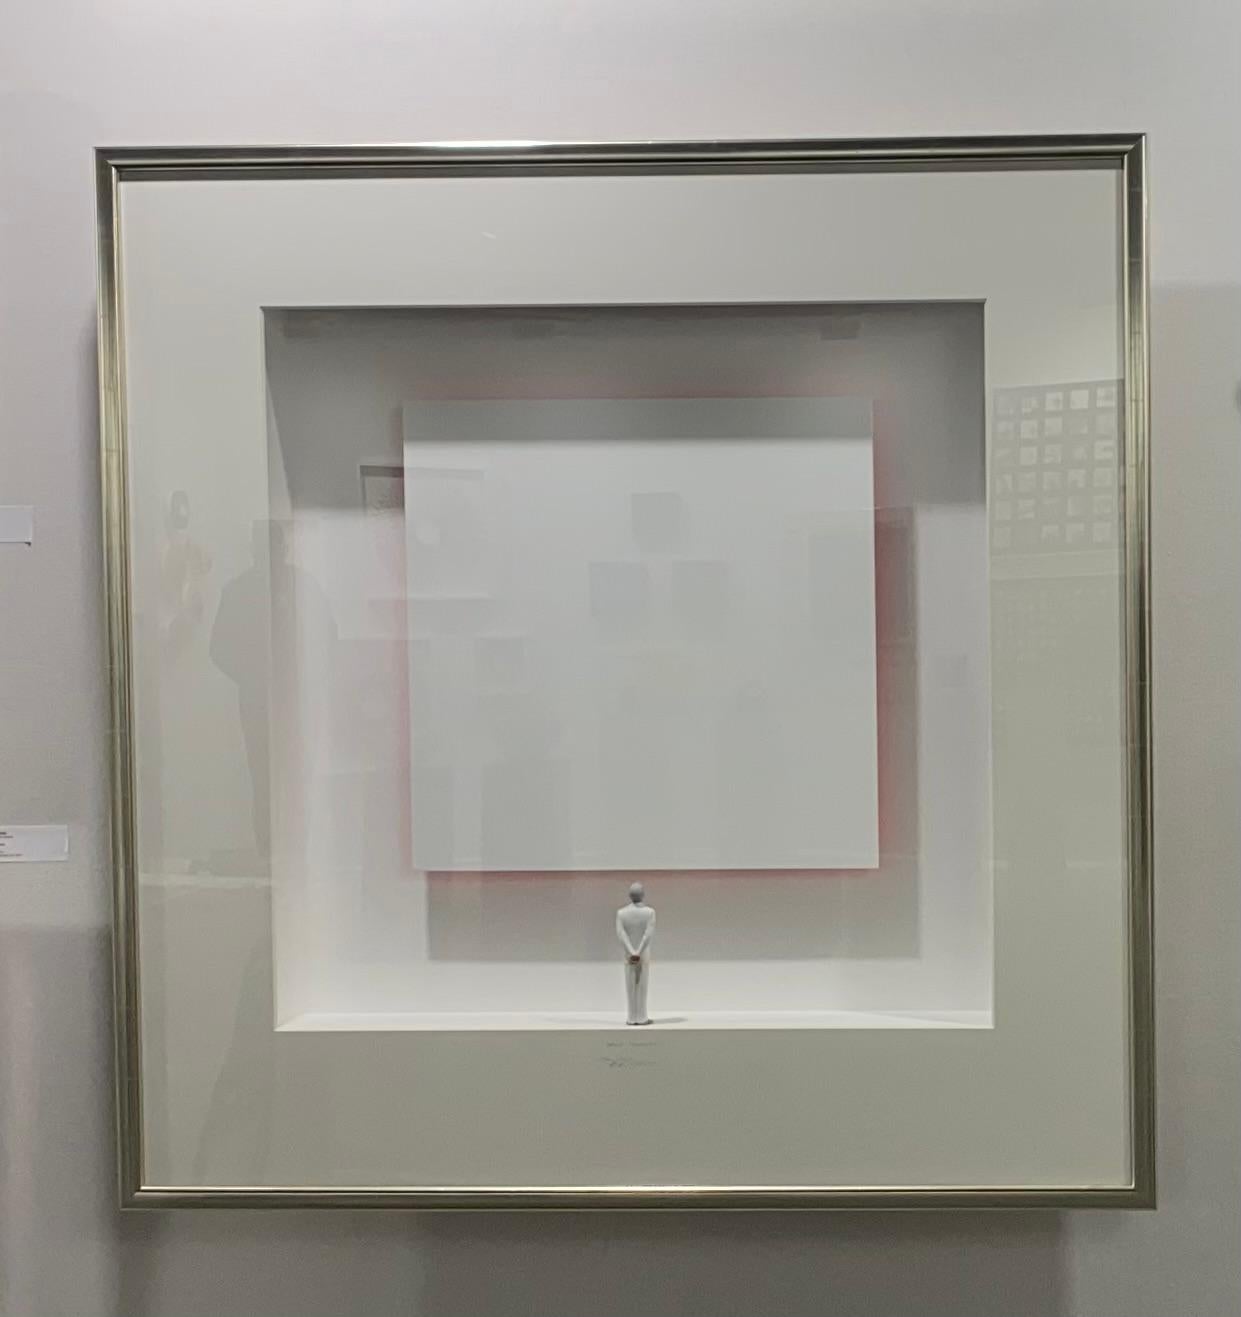 Great Reflection - zeitgenössisches minimalistisches Kunstwerk weiße Leinwand mit Reflexion (Assemblage), Mixed Media Art, von Volker Kuhn